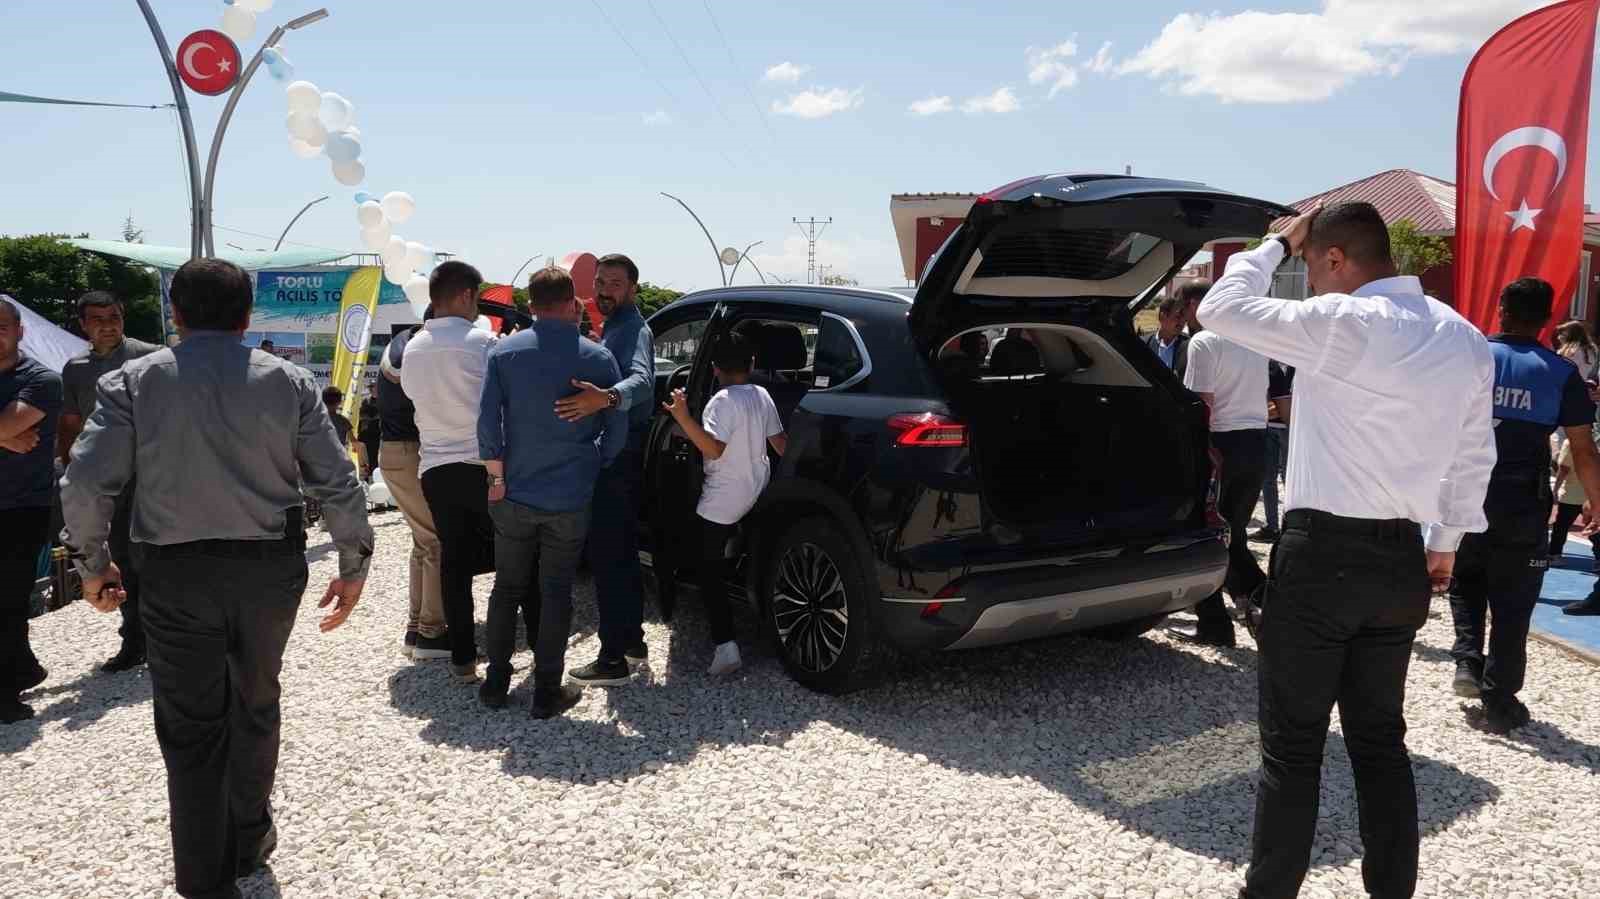 İl olmaya aday Erciş’te Türkiye’nin yerli otomobili TOGG tanıtıldı